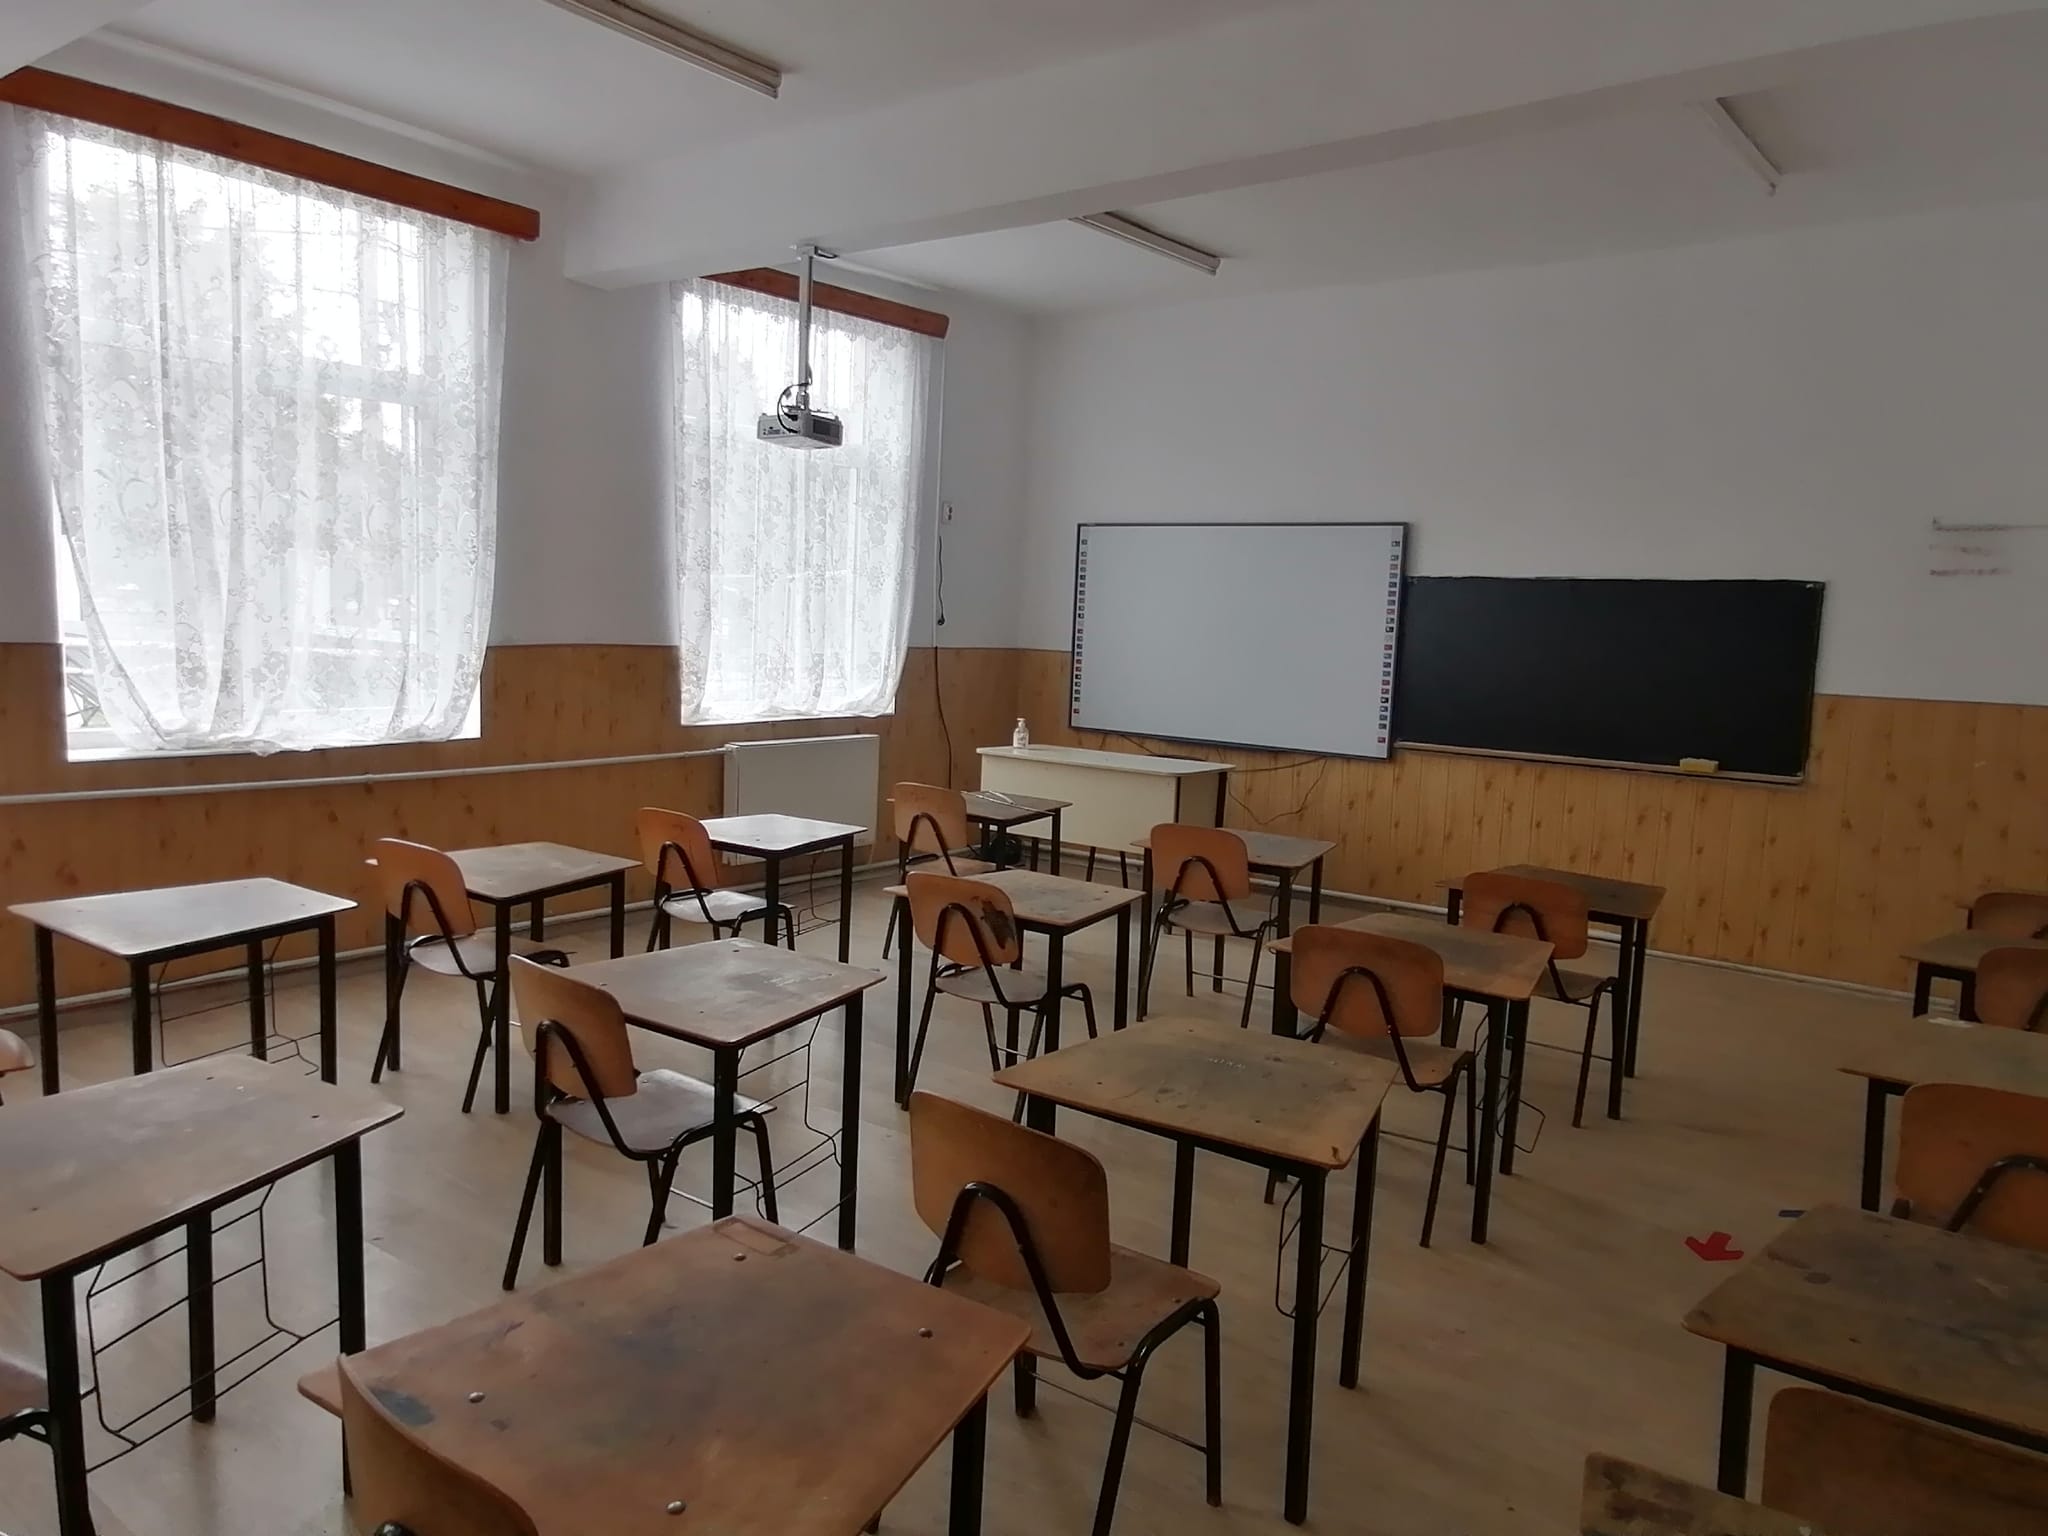 Inspectoratul Şcolar Judeţean Dolj a stabilit reţeaua şcolară pentru anul şcolar următor